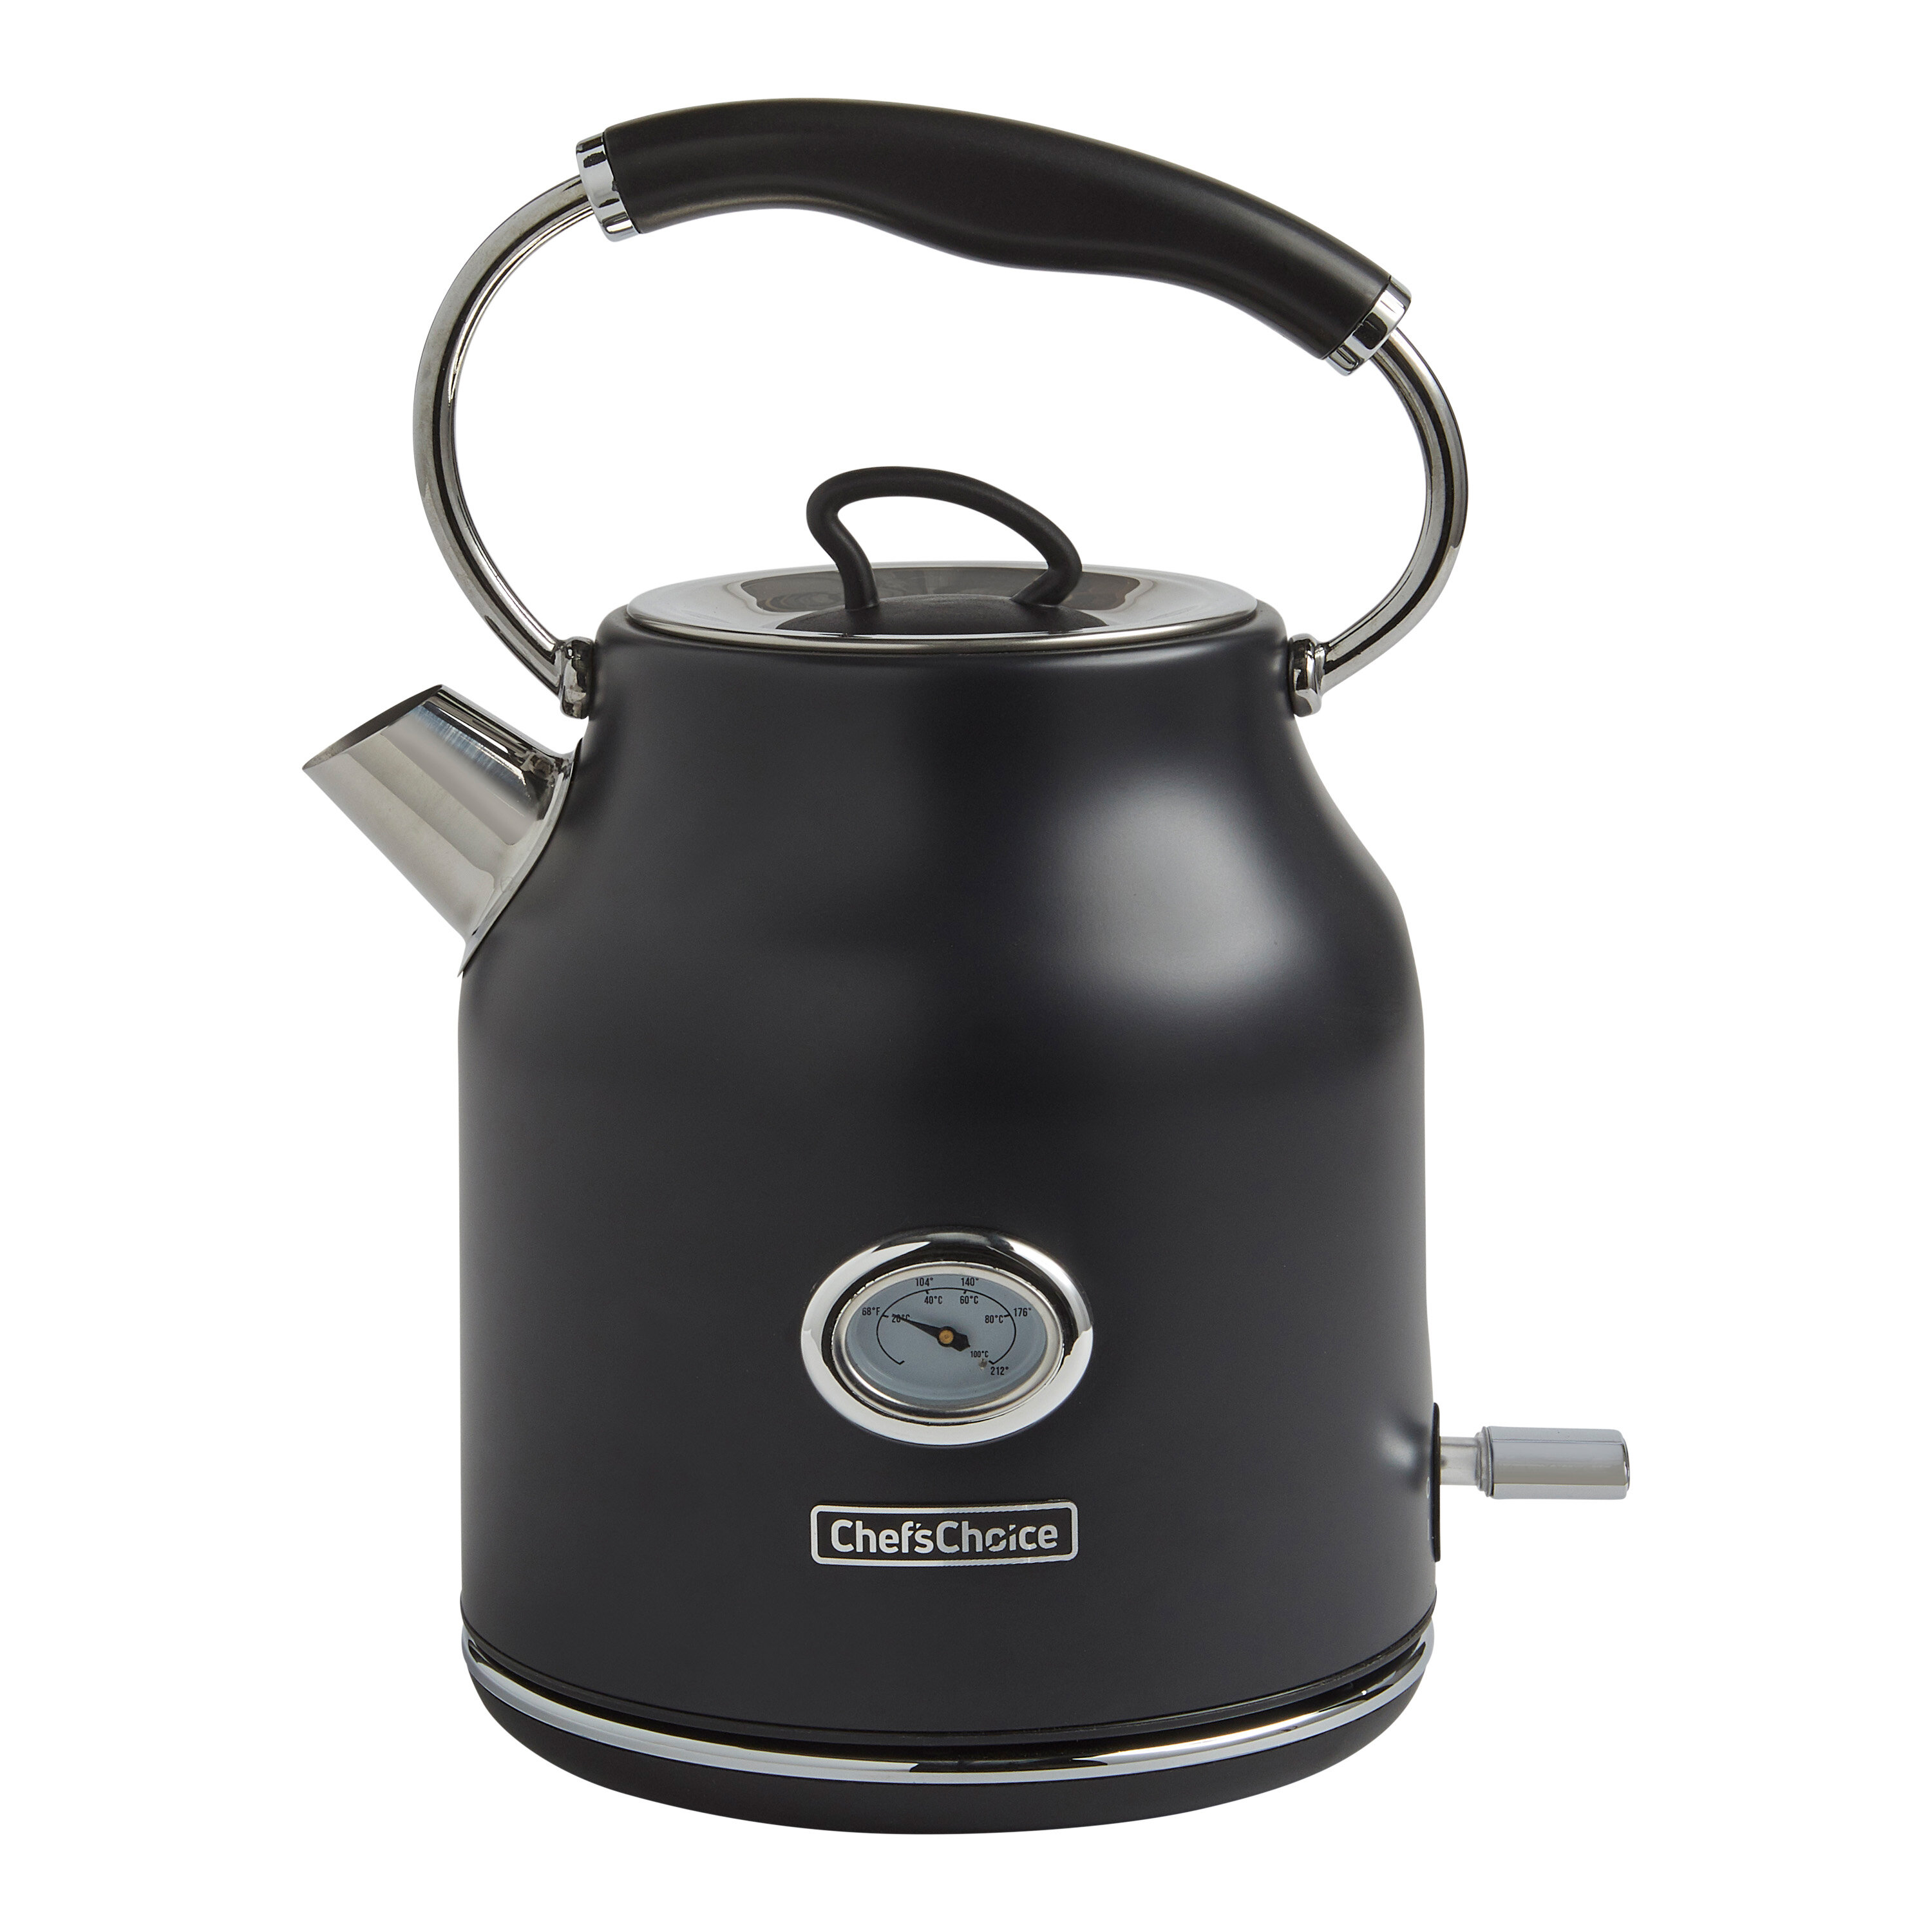 https://assets.wfcdn.com/im/26651666/compr-r85/1666/166664544/chefschoice-gourmezza-electric-kettle-17-liter-capacity.jpg